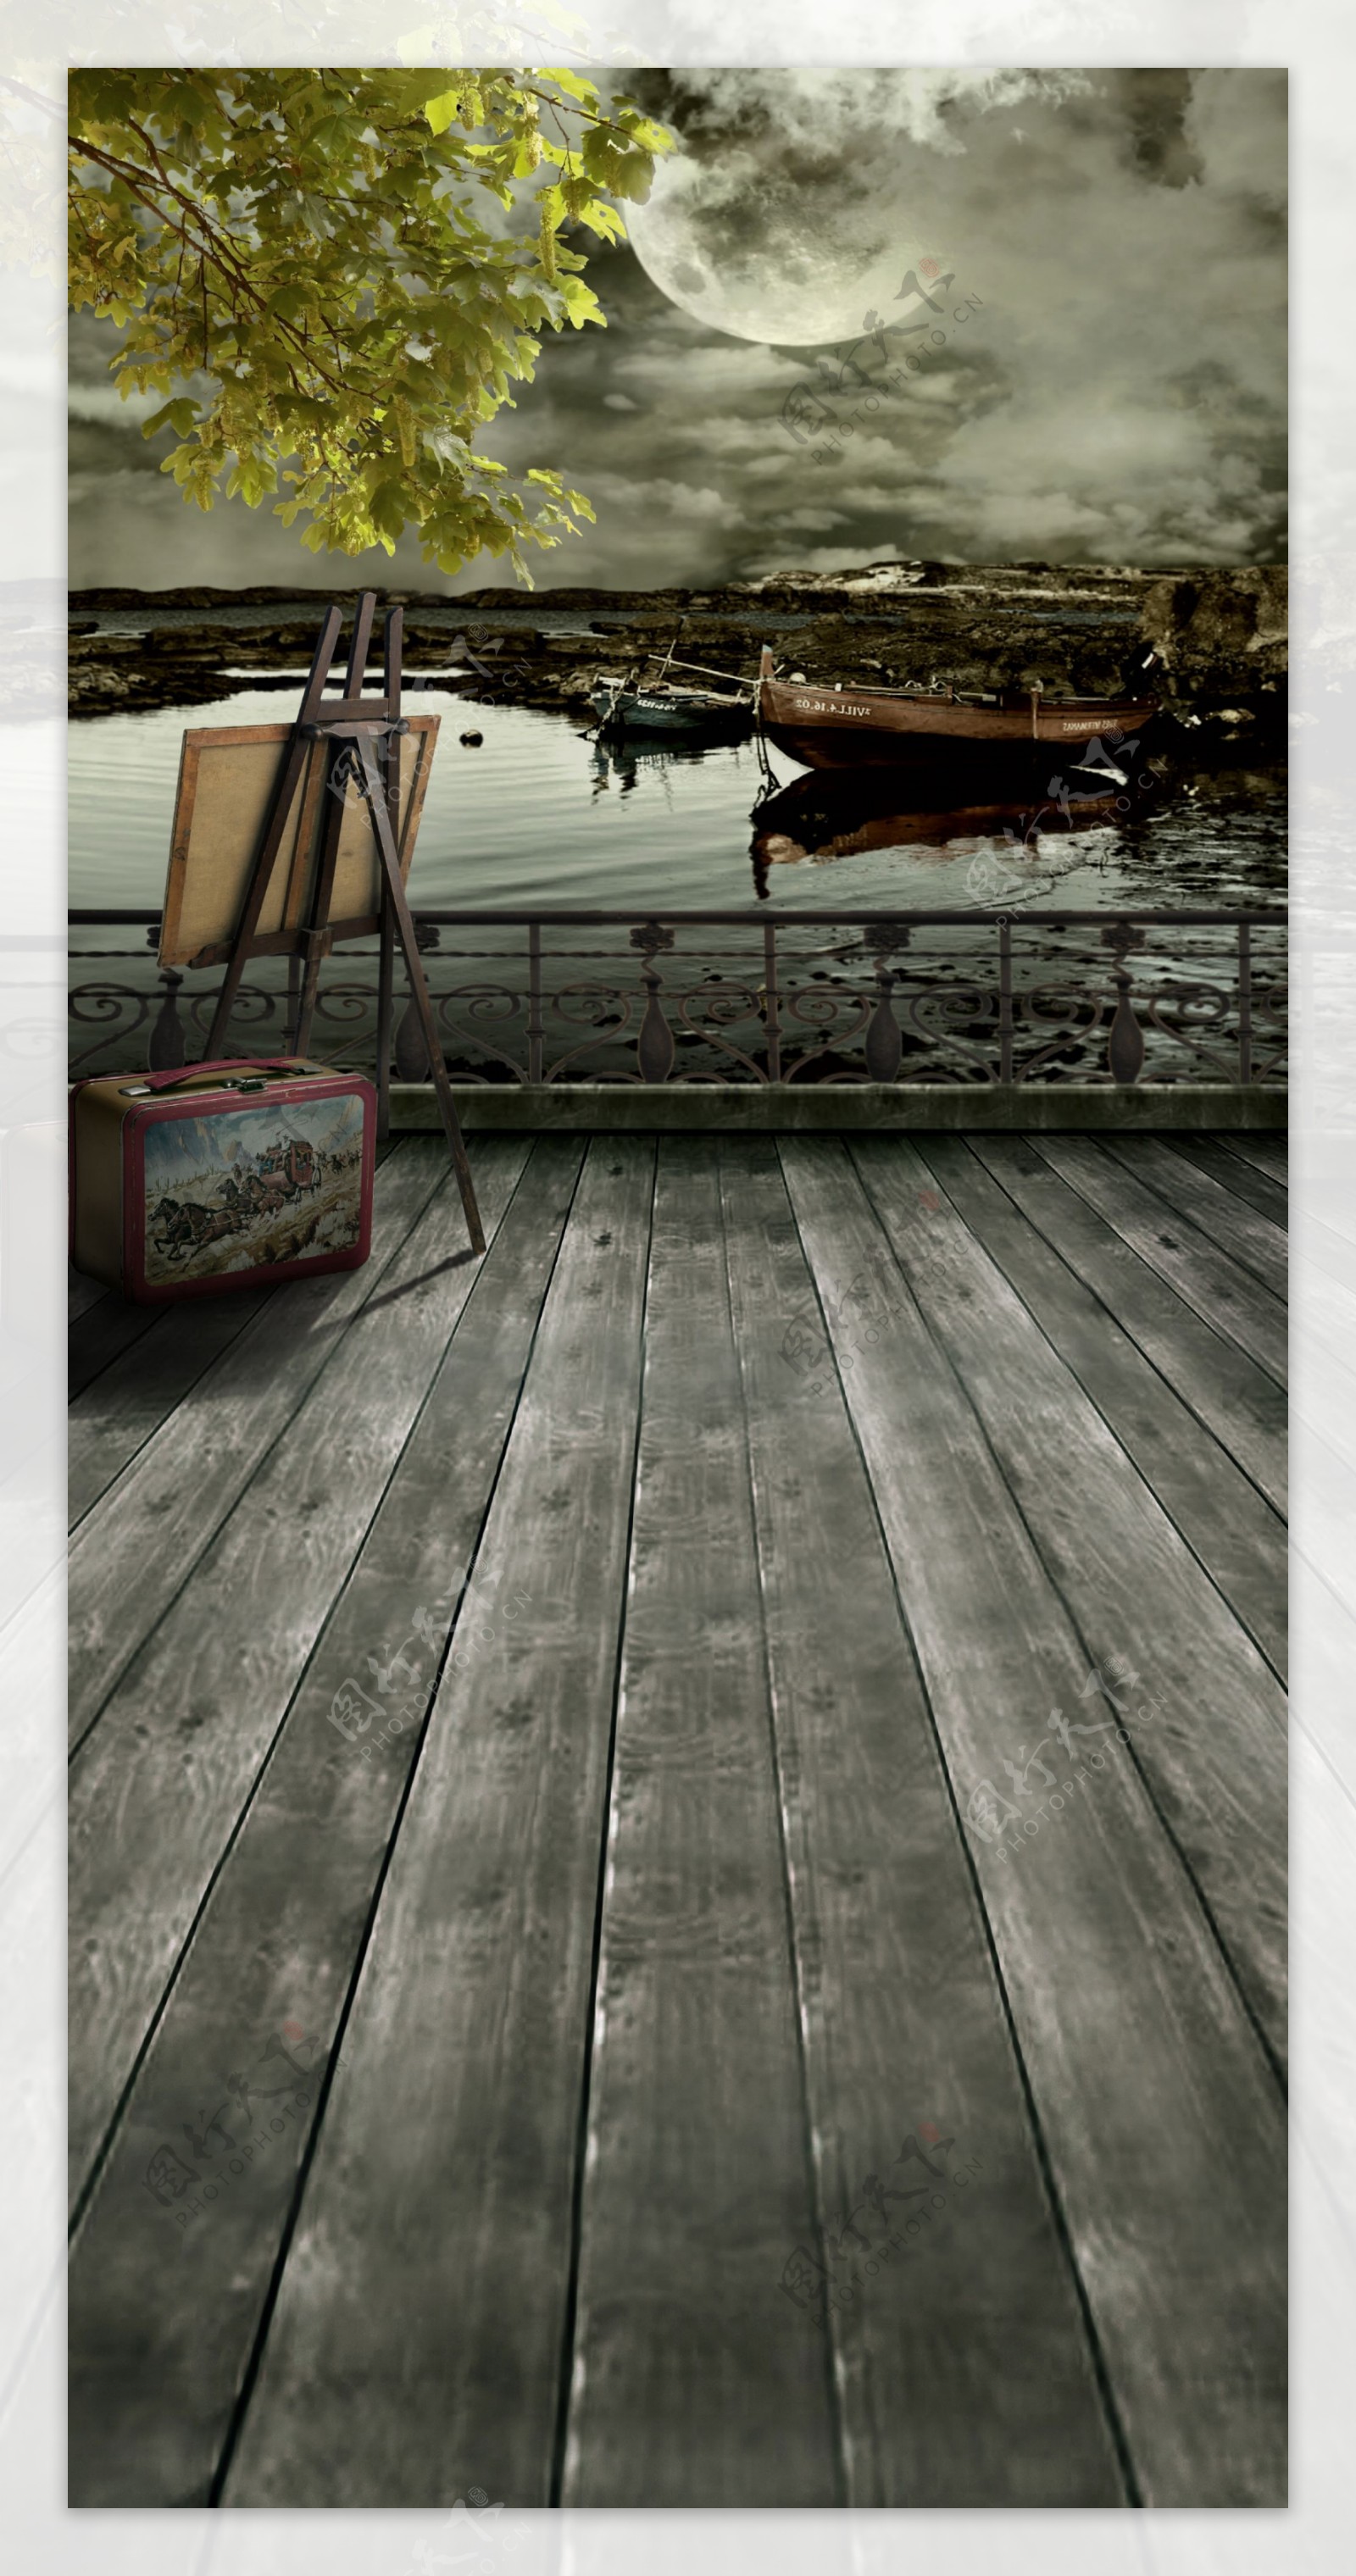 画架与湖边的木船影楼摄影背景图片